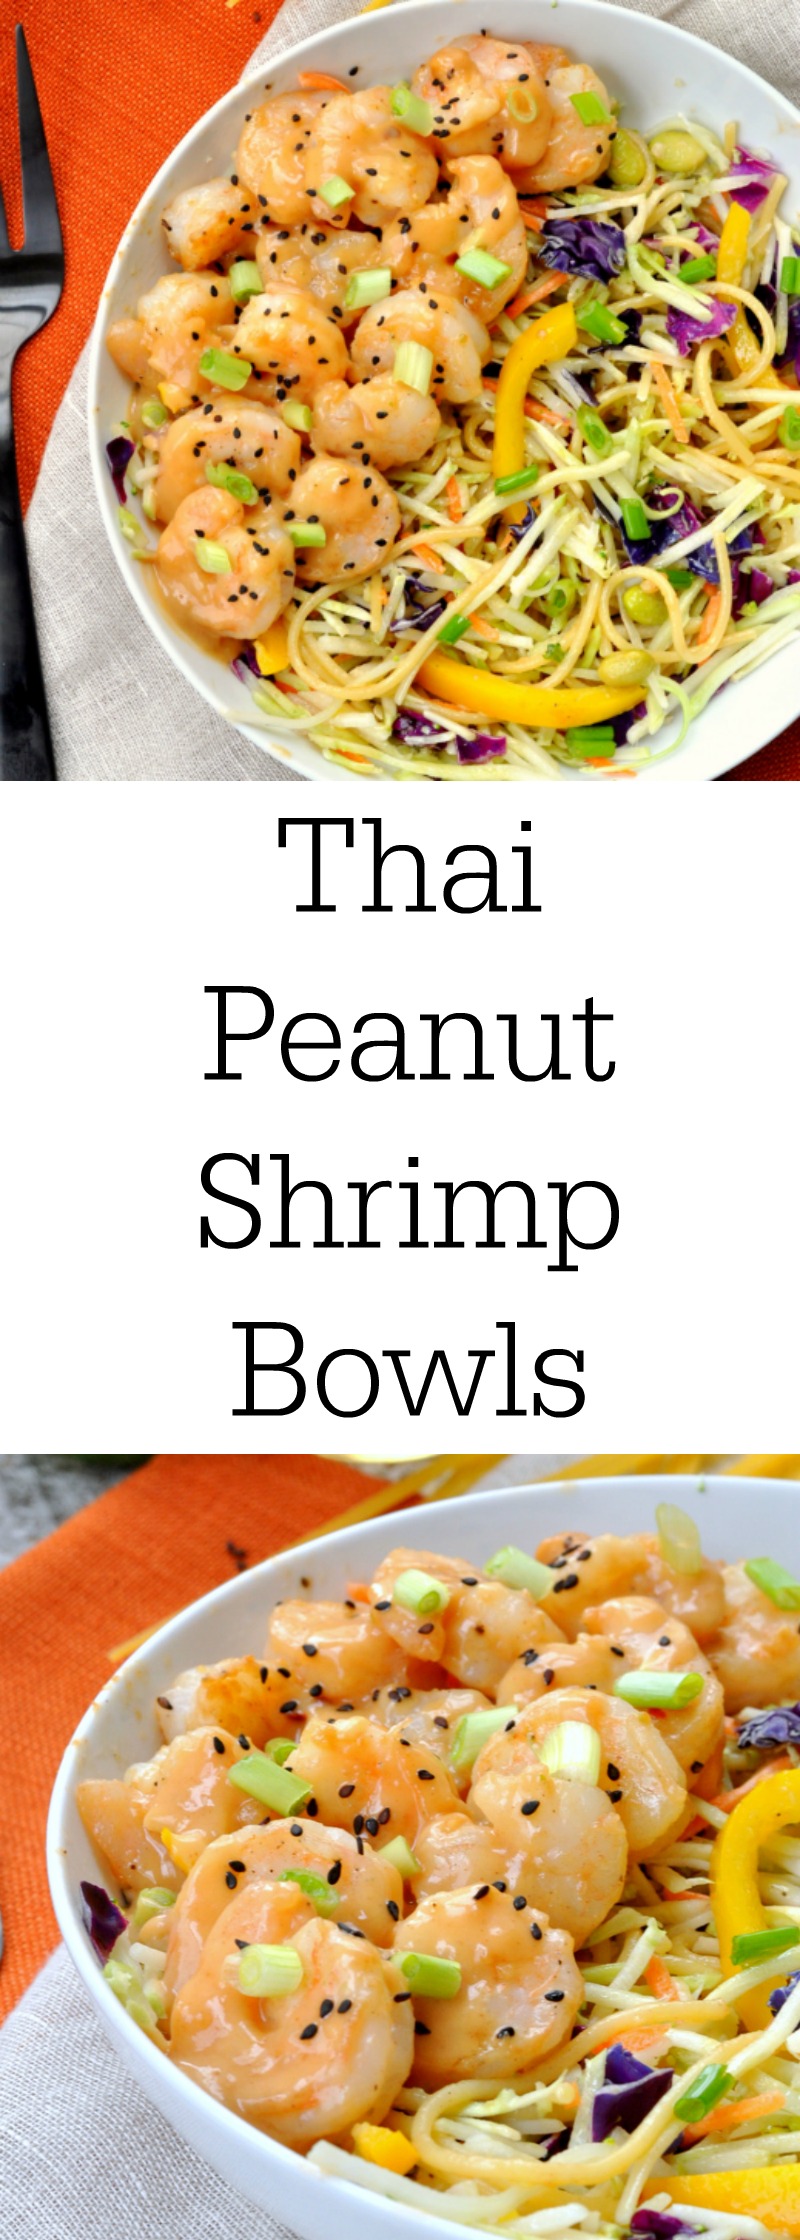 Thai Peanut Shrimp Bowls